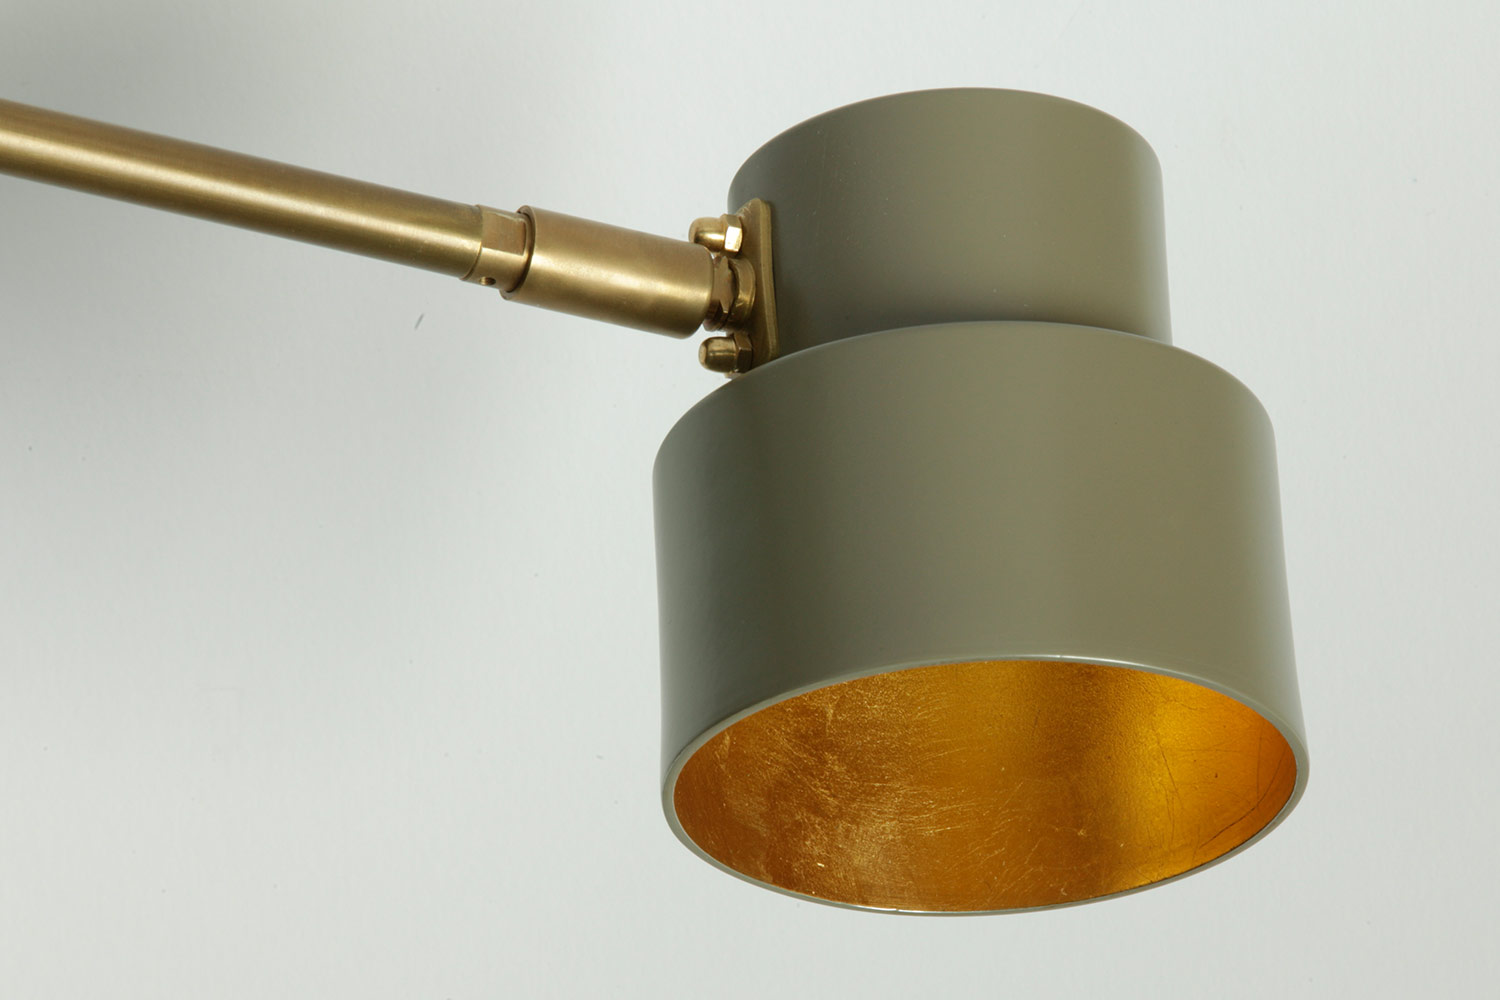 Klassisch-moderner 6-armiger Messing-Leuchter aus Italien: Schirm des kleinen Modells Ø 10 cm in beige-grau (RAL 7006) mit Innenseite in Blattgold